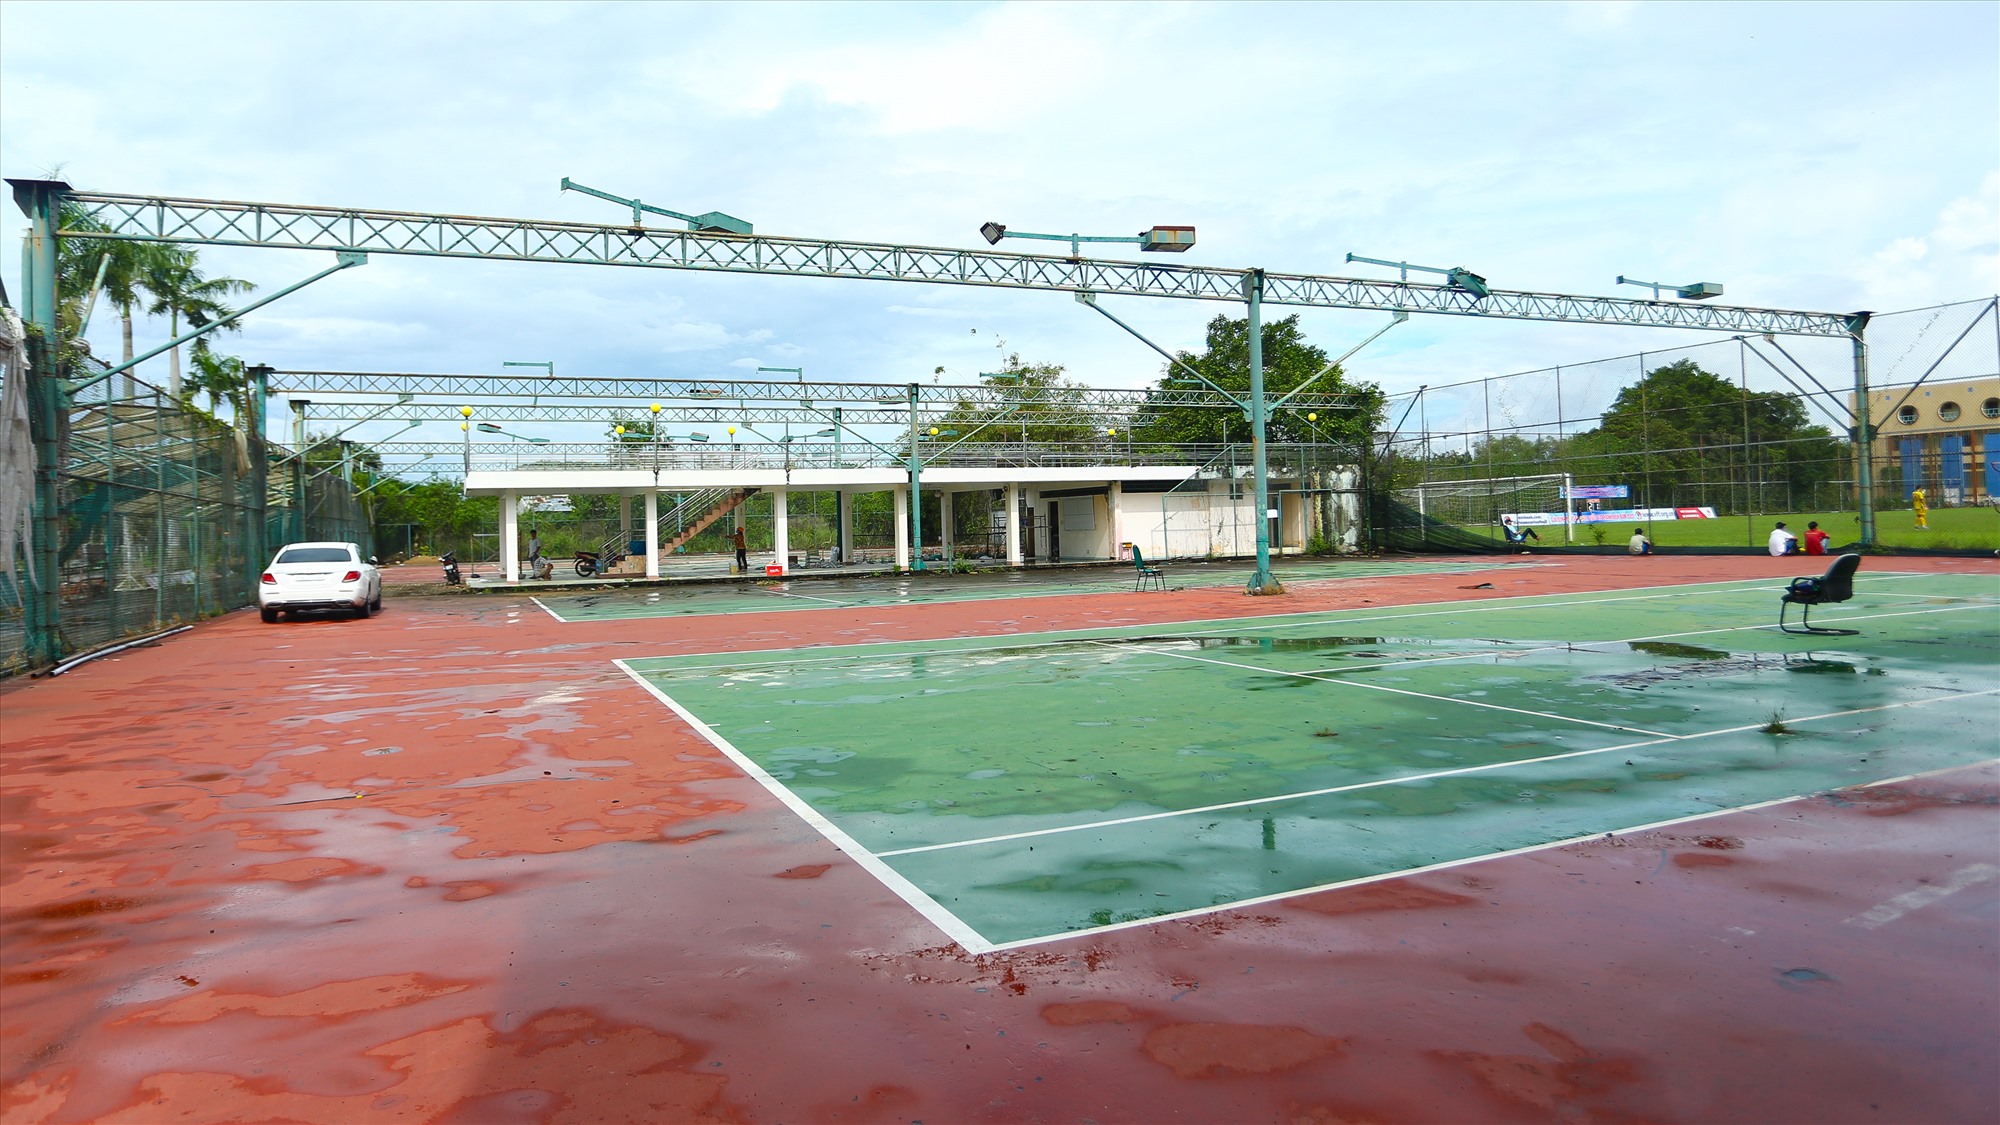 Sân tennis đọng nước và chỉ được sử dụng để làm khu vực để xe.